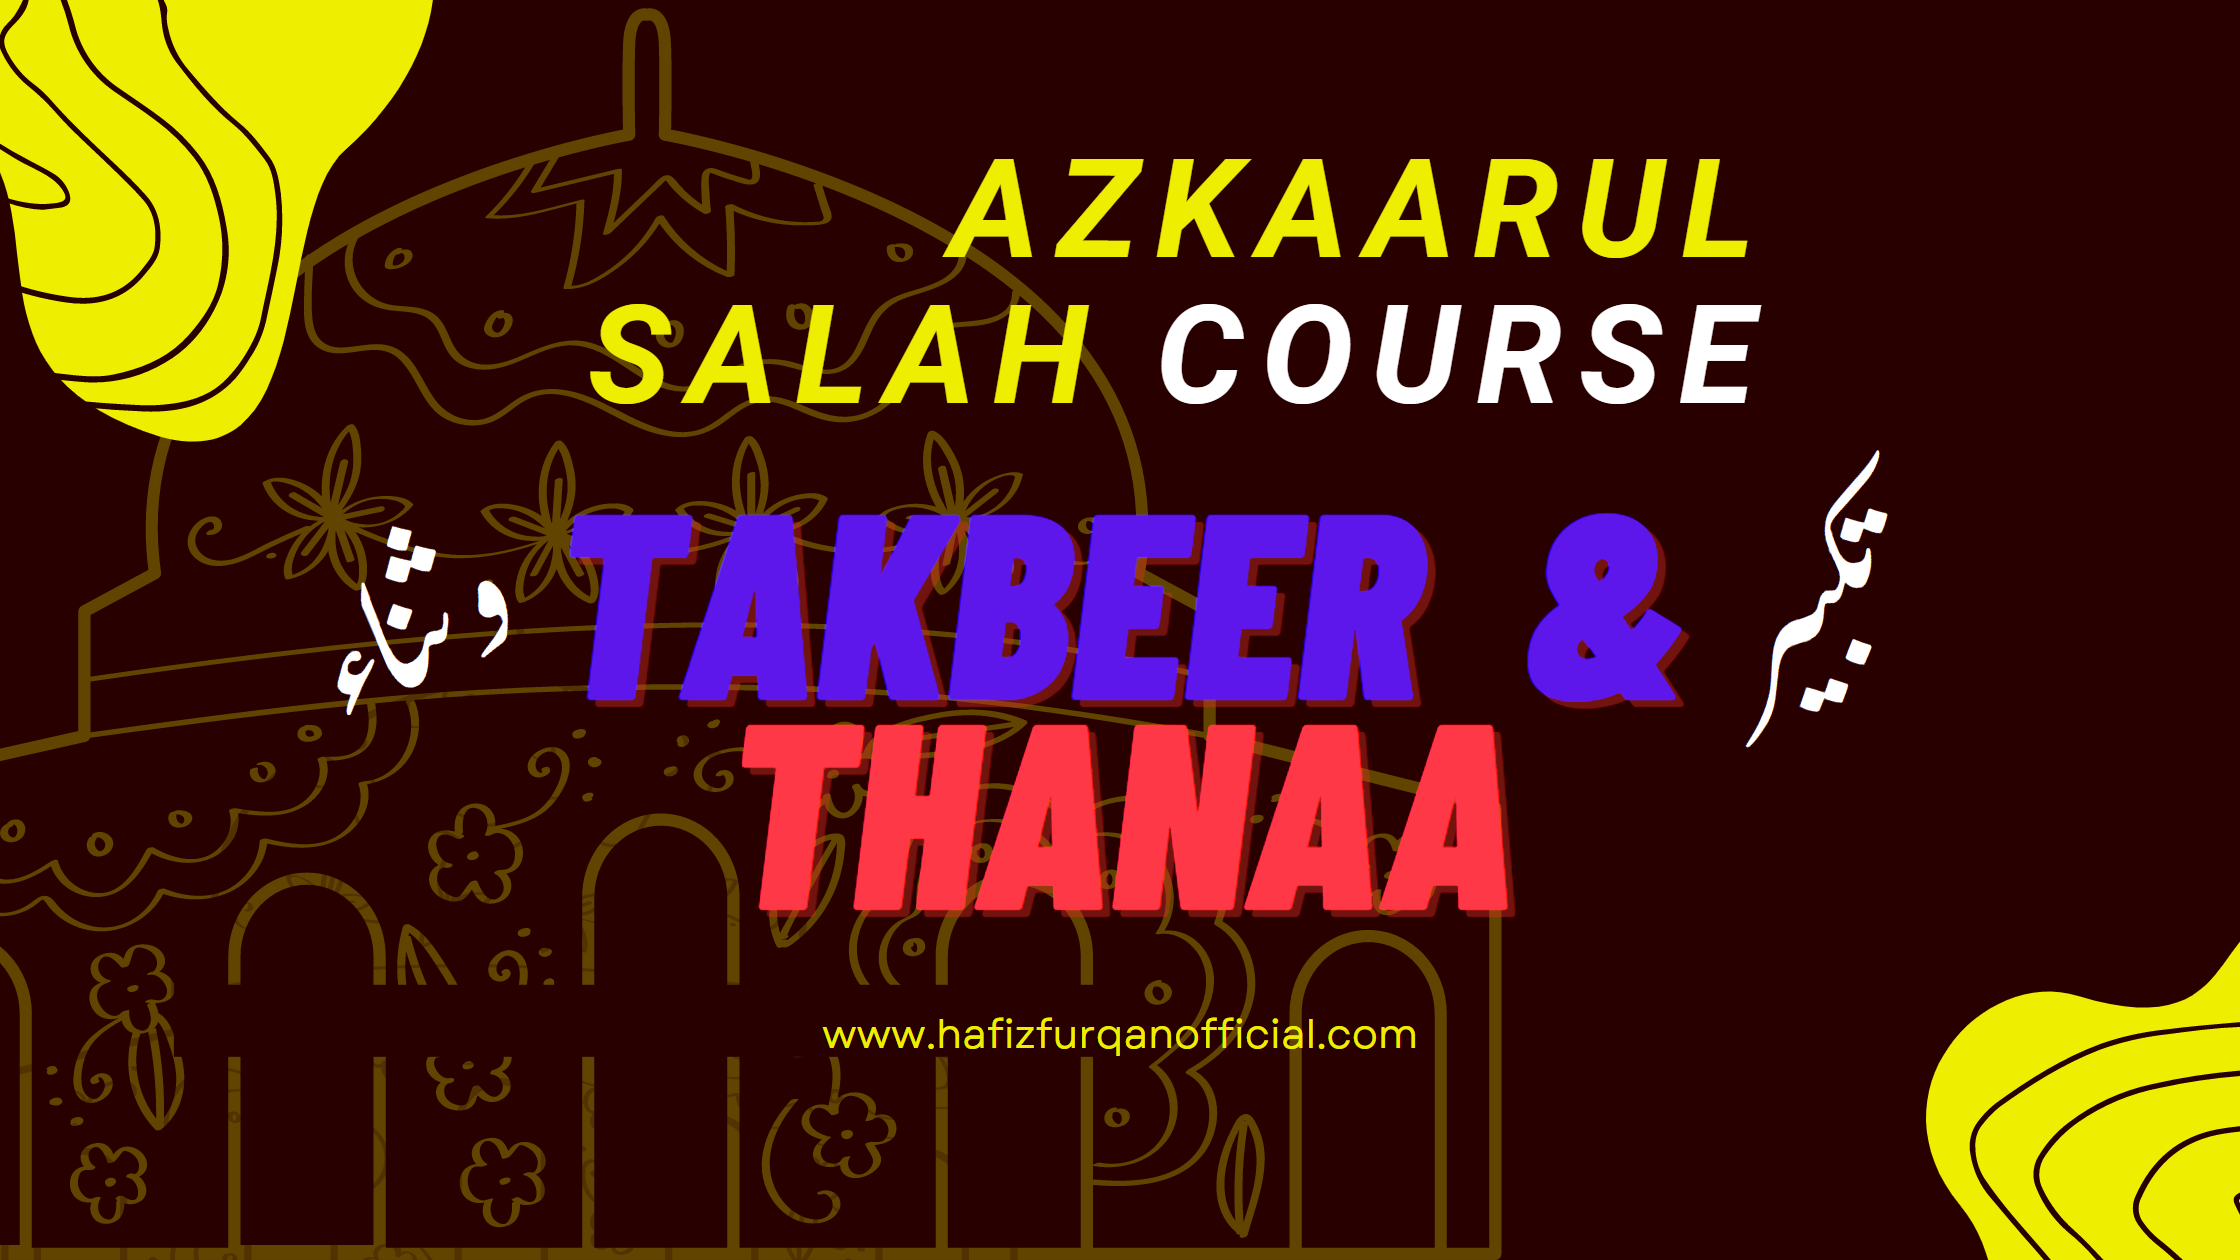 Takbeer and Salah